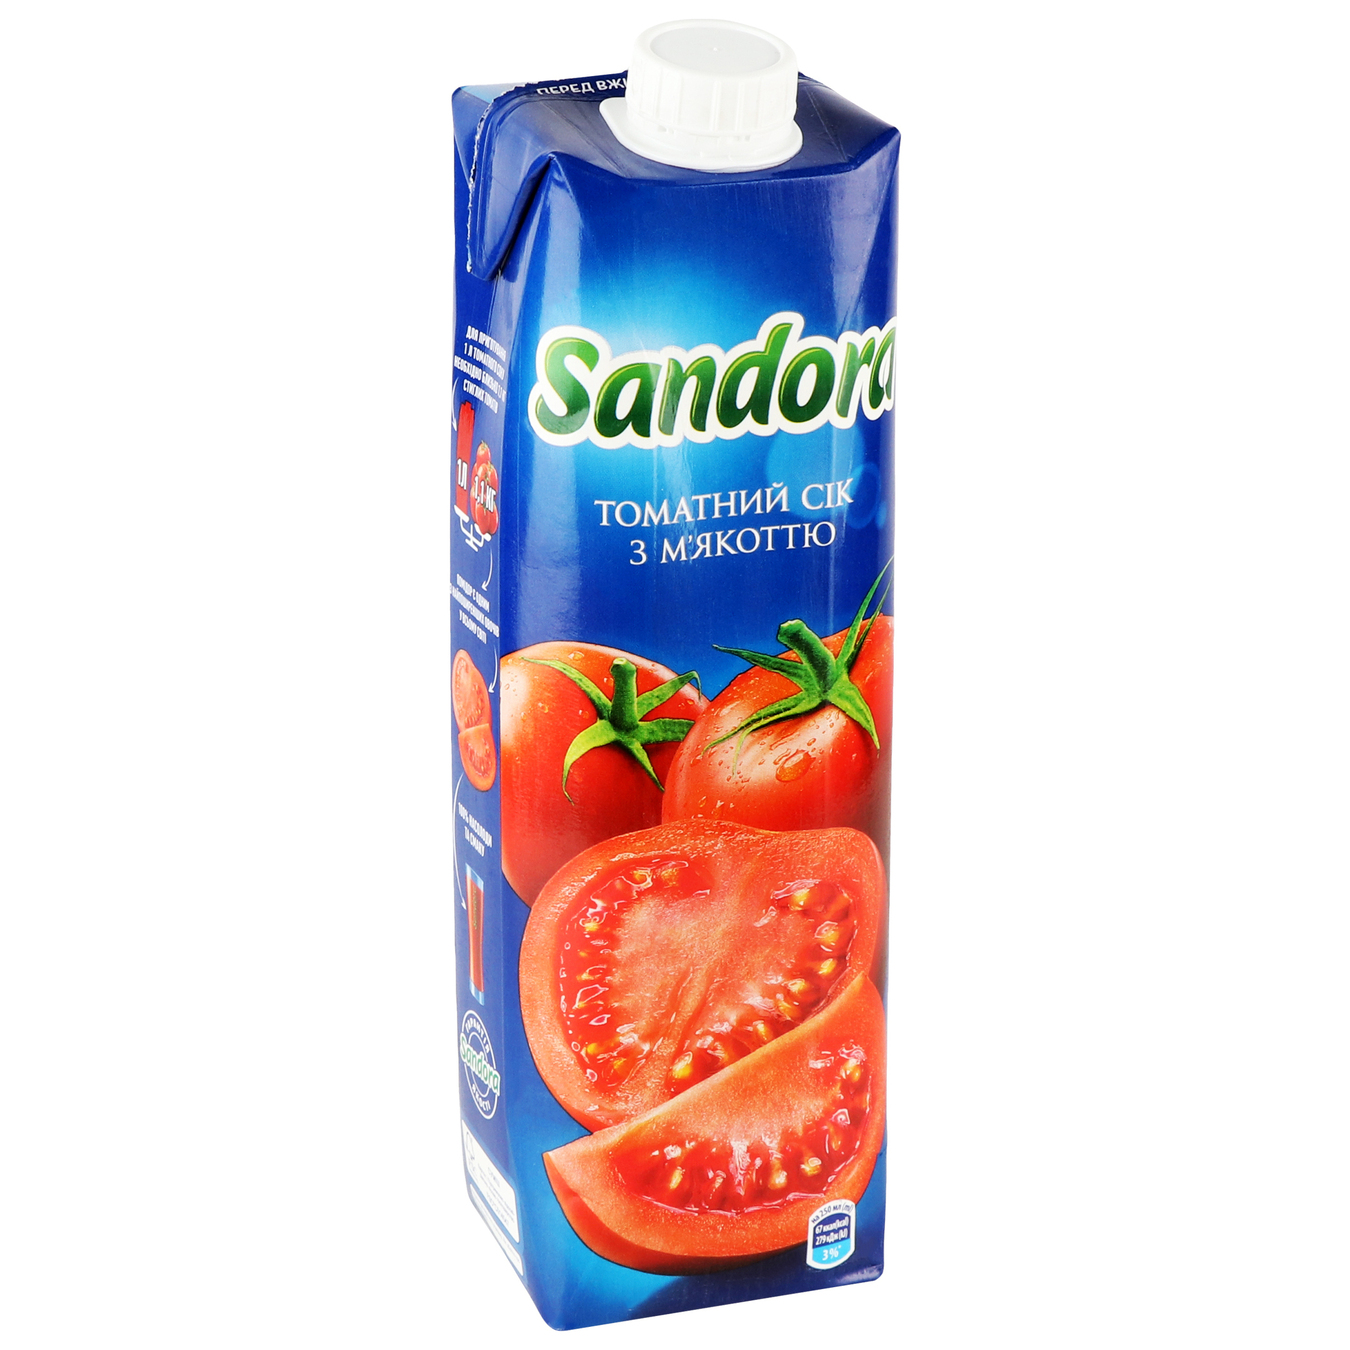 Sandora Tomato Juice with Salt 0,95l 4